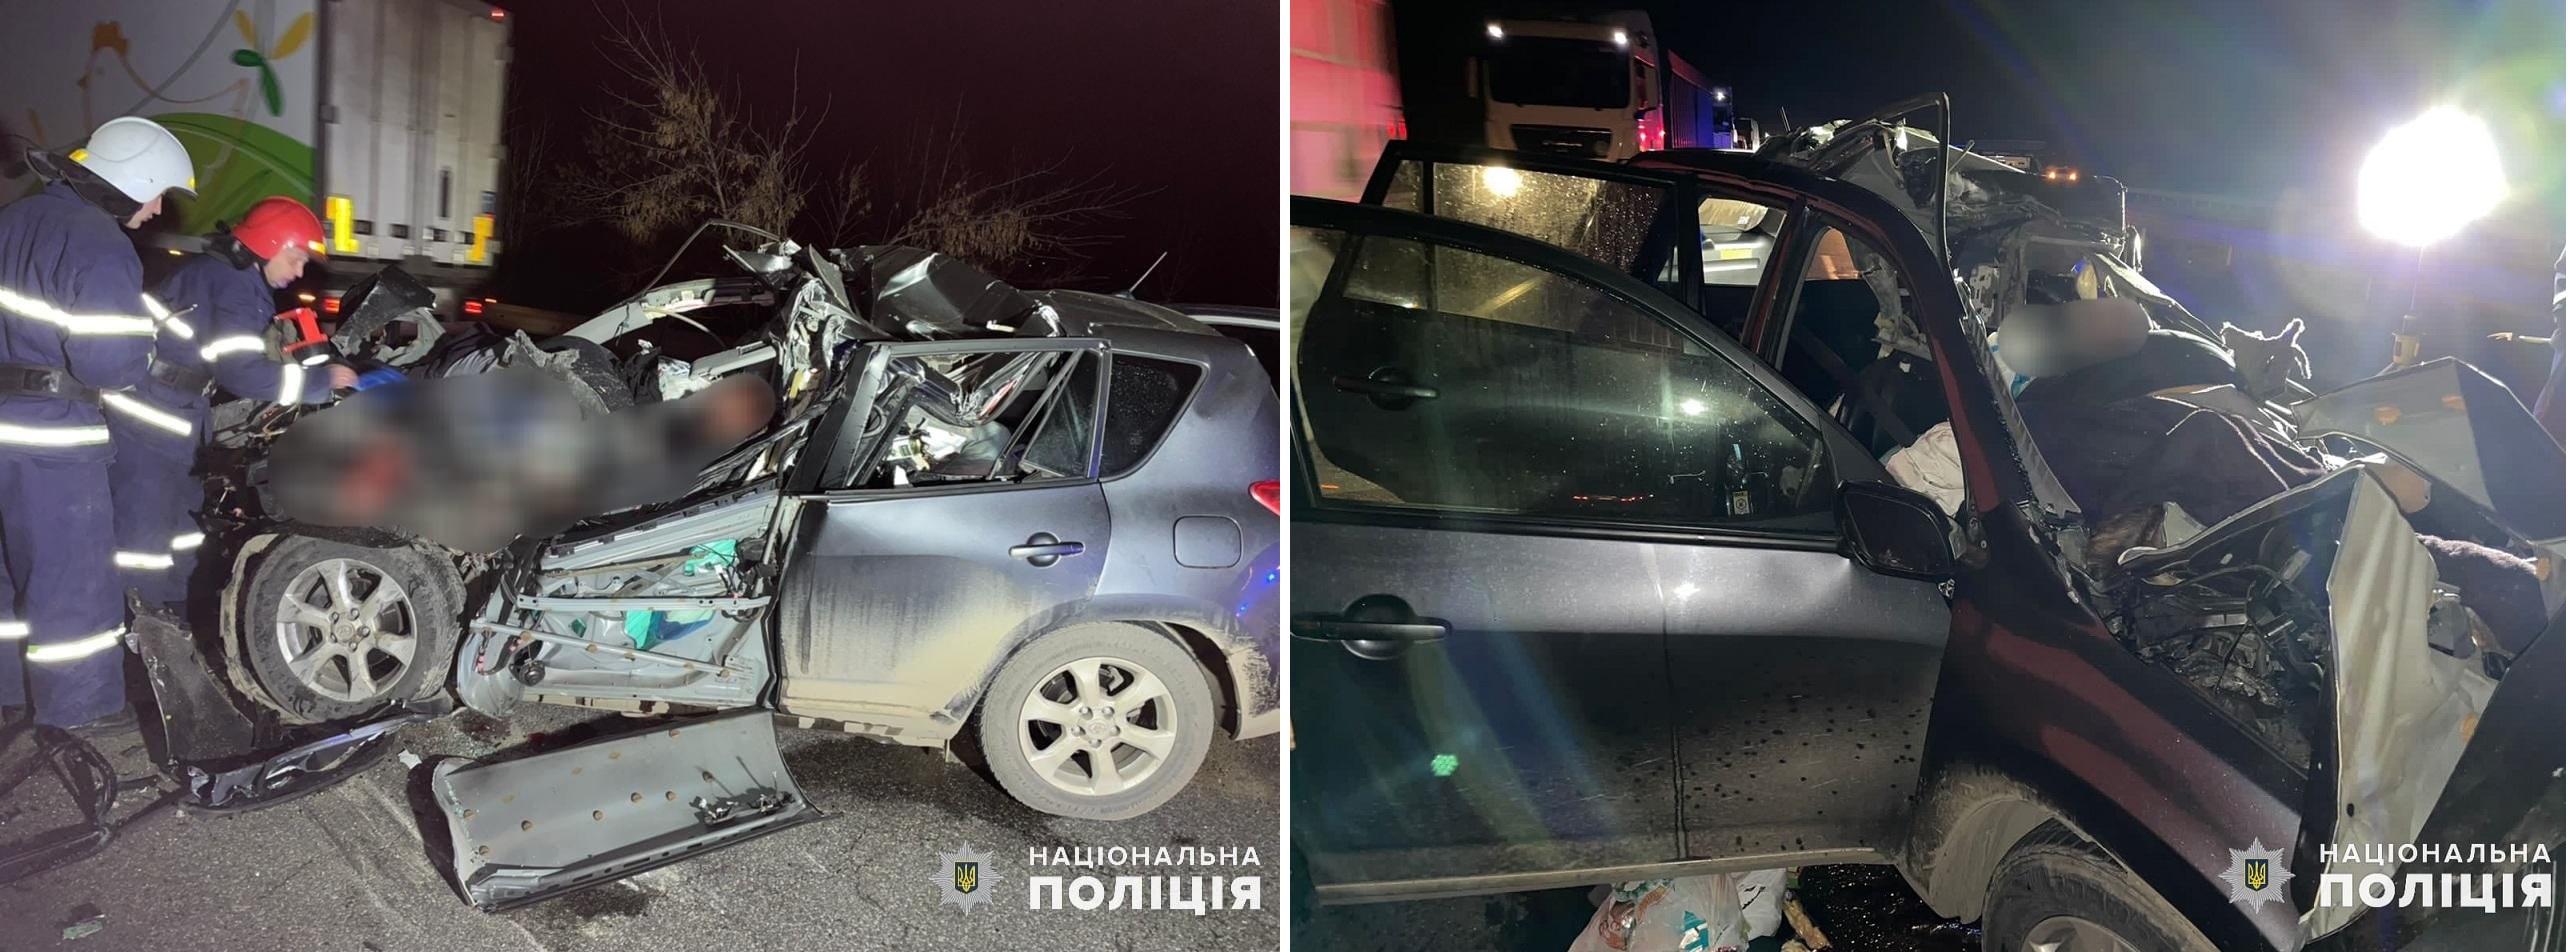 Под Николаевом в жуткой автокатастрофе погибли пять человек